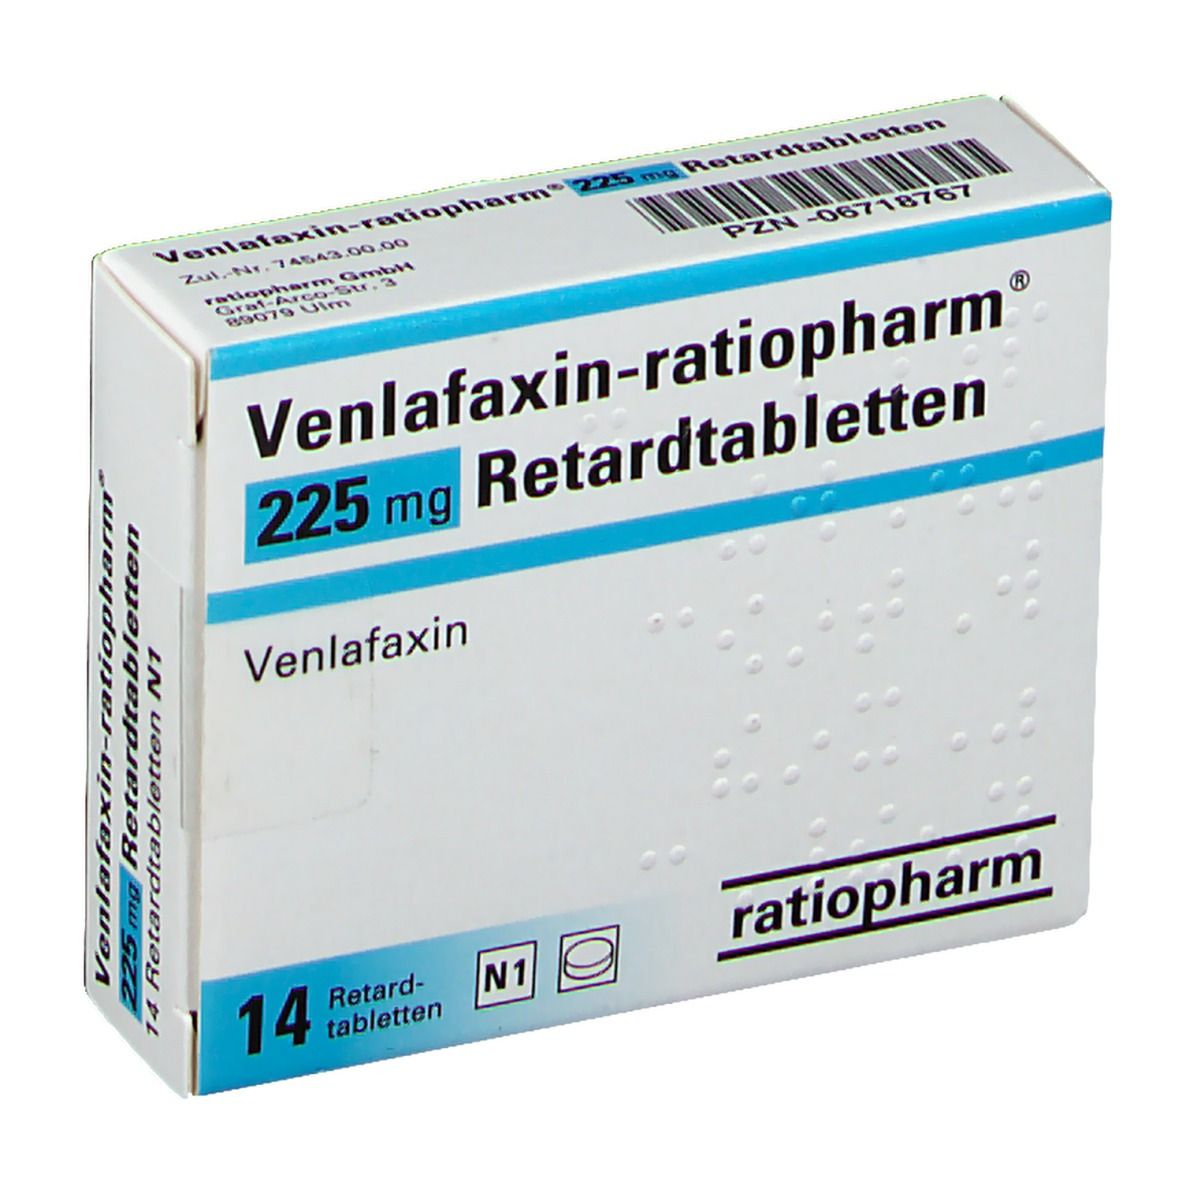 Купить венлафаксин 75. Венлафаксин 75. Венлафаксин 225 мг. Венлафаксин 75 мг. Венлафаксин 150 мг органика.